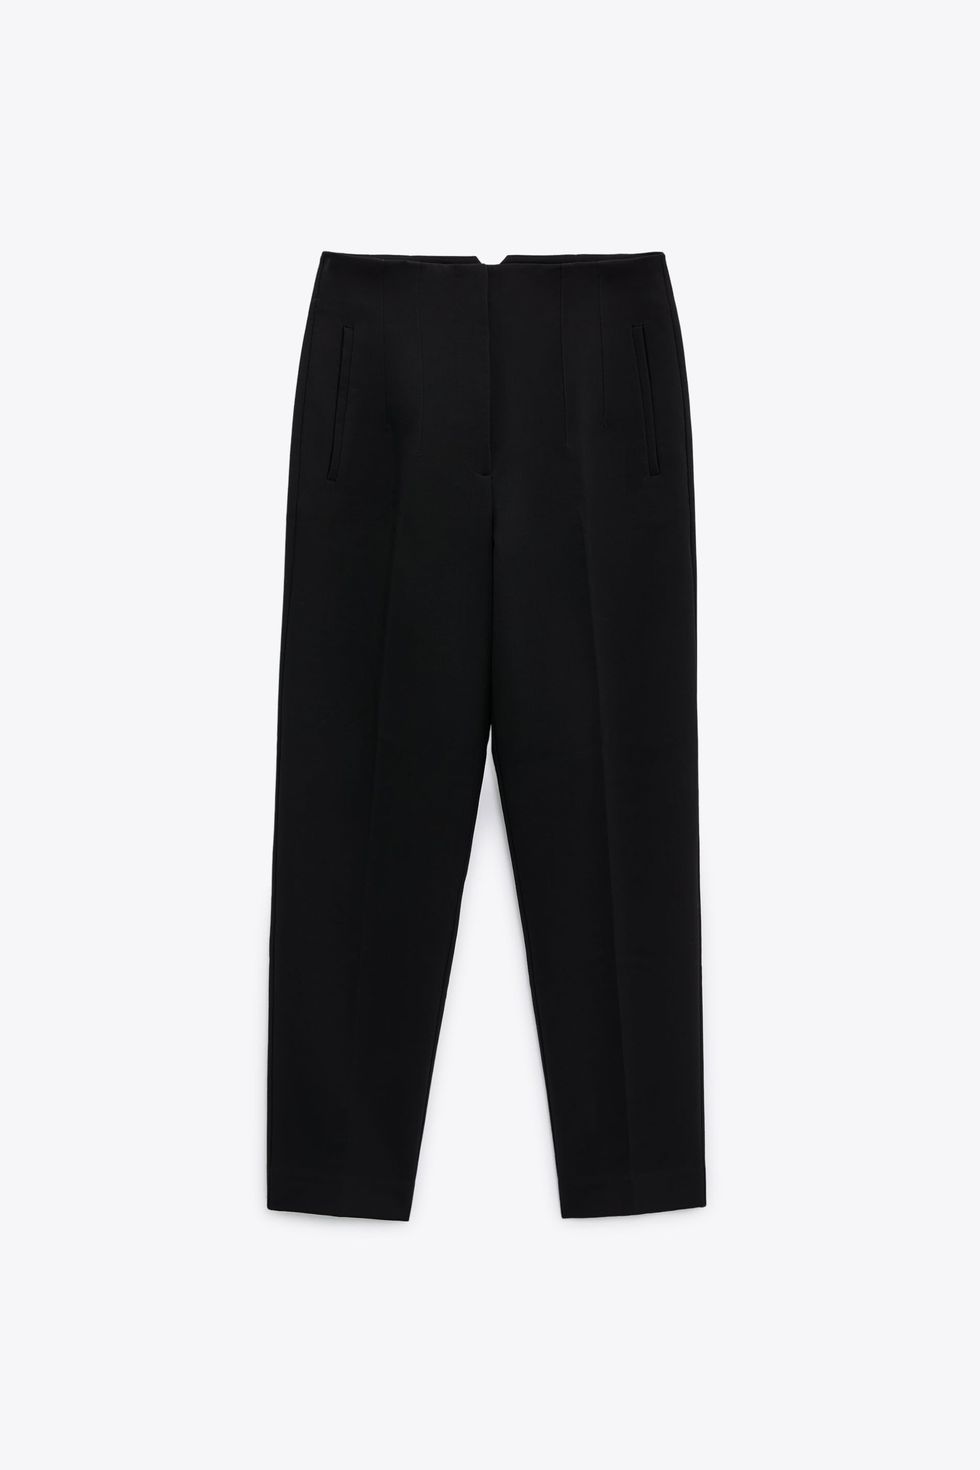 El pantalón de pinzas efecto cuerpazo de 25 € de Zara